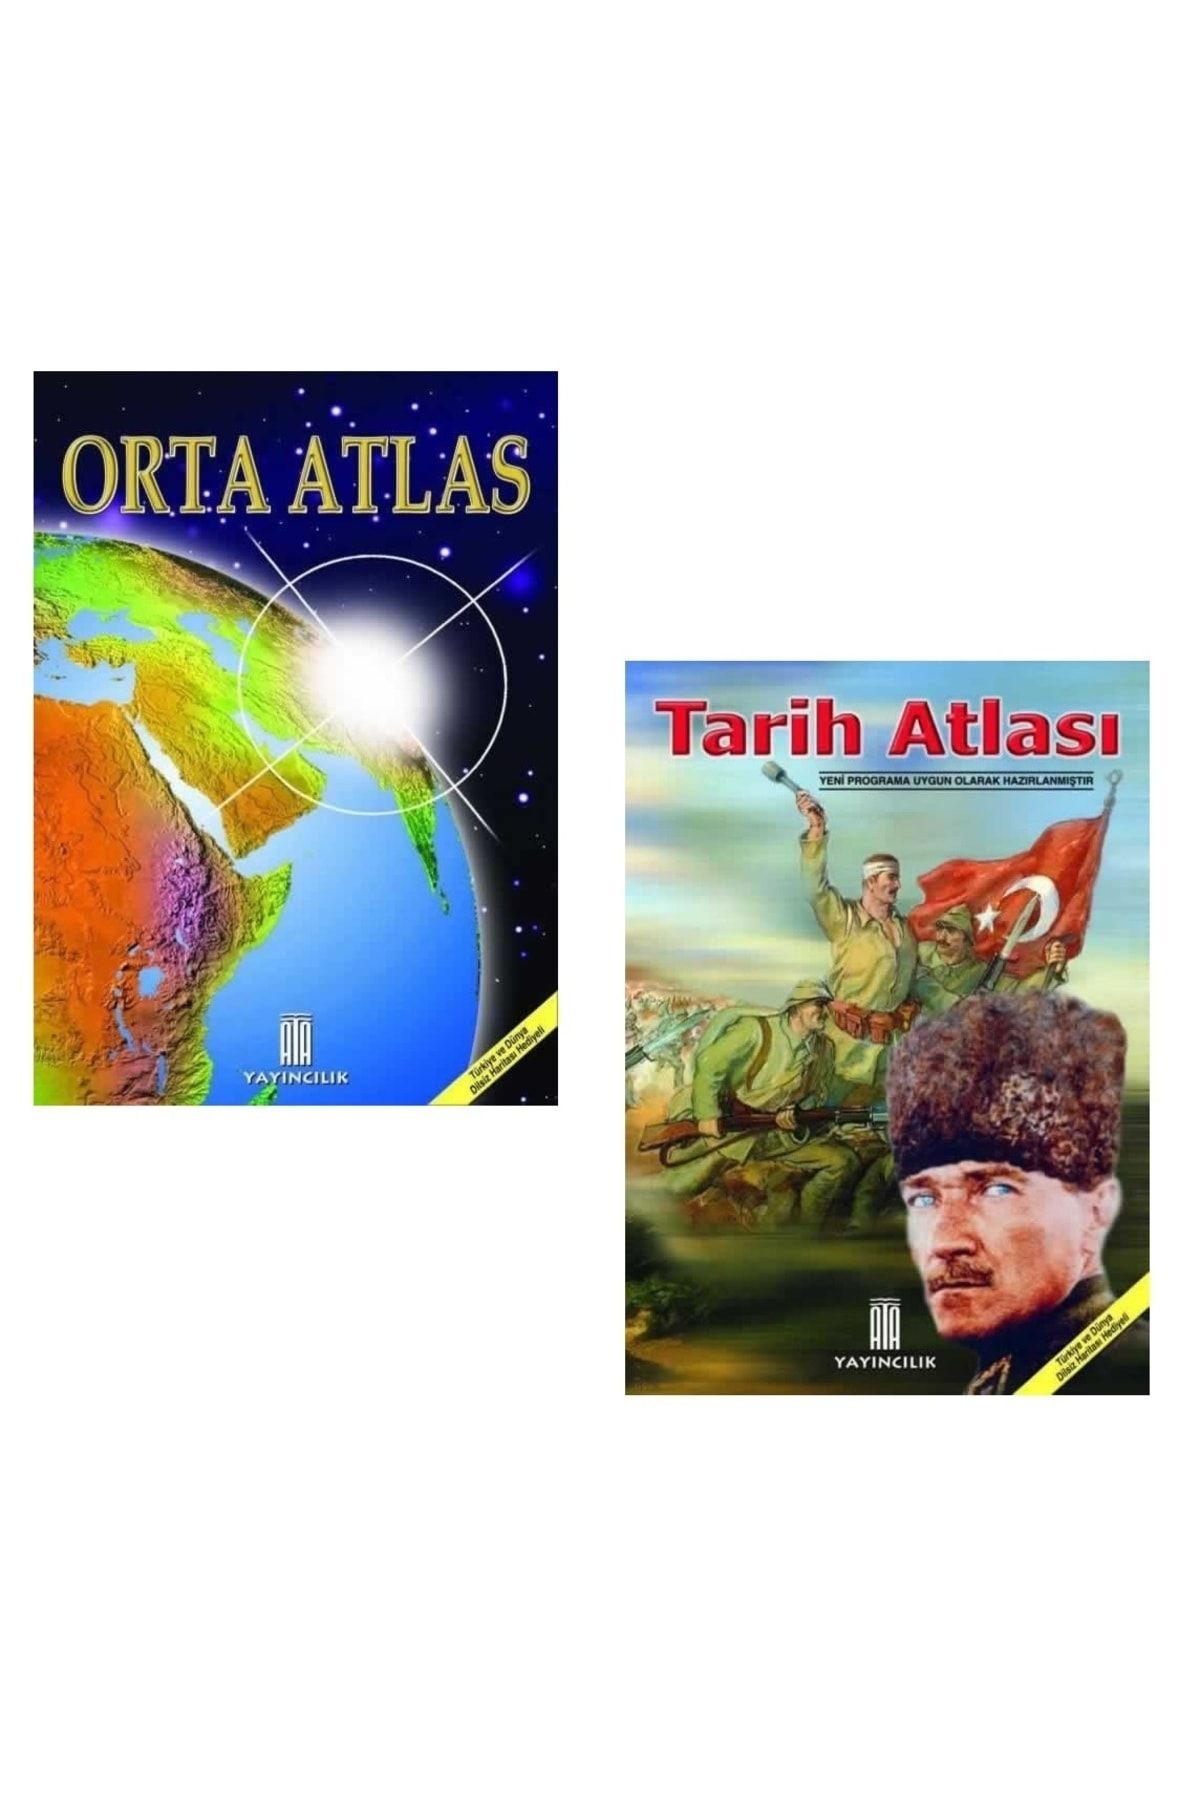 Ata Yayıncılık Orta Atlas-Tarih Atlası